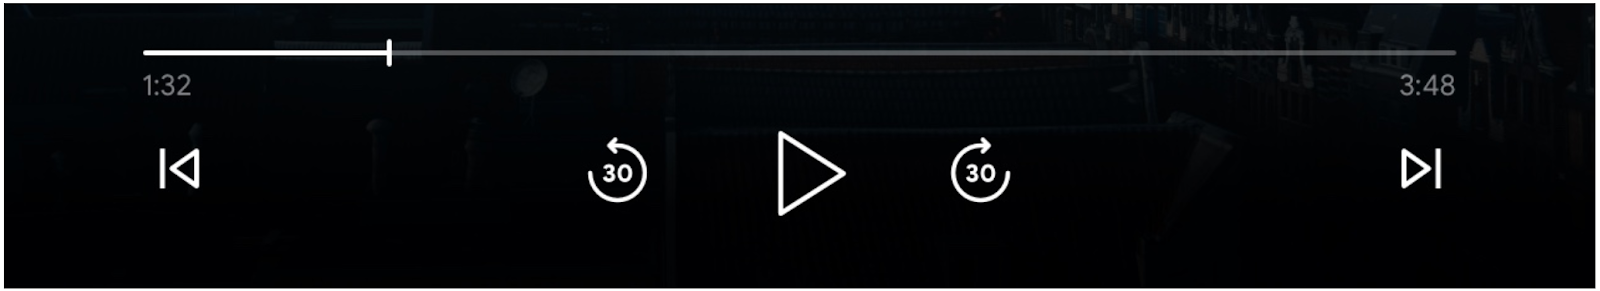 Obraz elementów sterujących odtwarzaczem: pasek postępu, przycisk „Odtwórz”, przyciski „Przeskocz do przodu” i „Przeskocz do tyłu” oraz włączone przyciski „Poprzednia kolejka” i „Następny w kolejce”